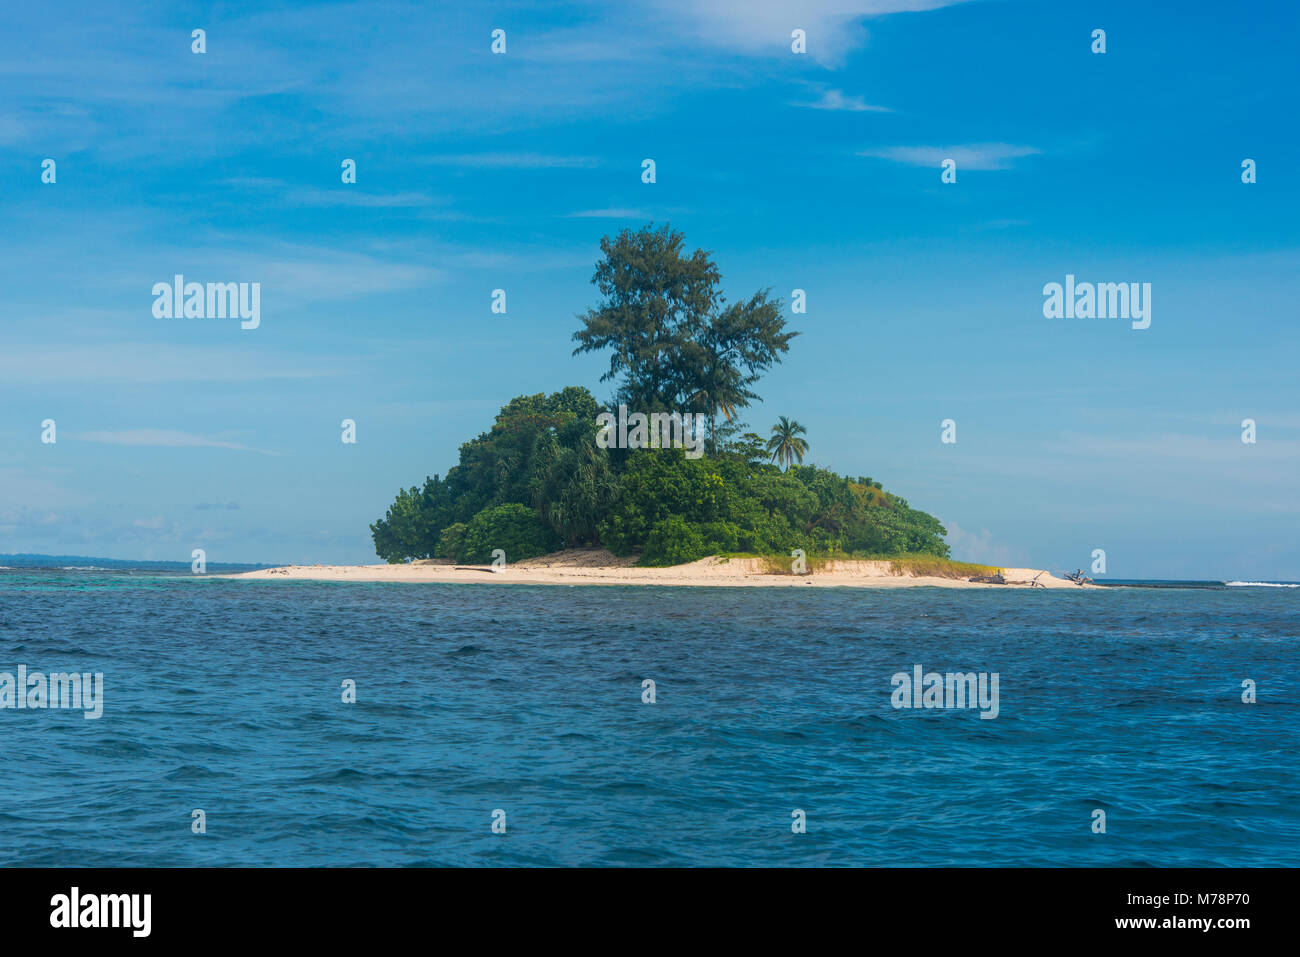 La magnifique petite île de ral au large de la côte de Kavieng, New Ireland, Papouasie Nouvelle Guinée, du Pacifique Banque D'Images